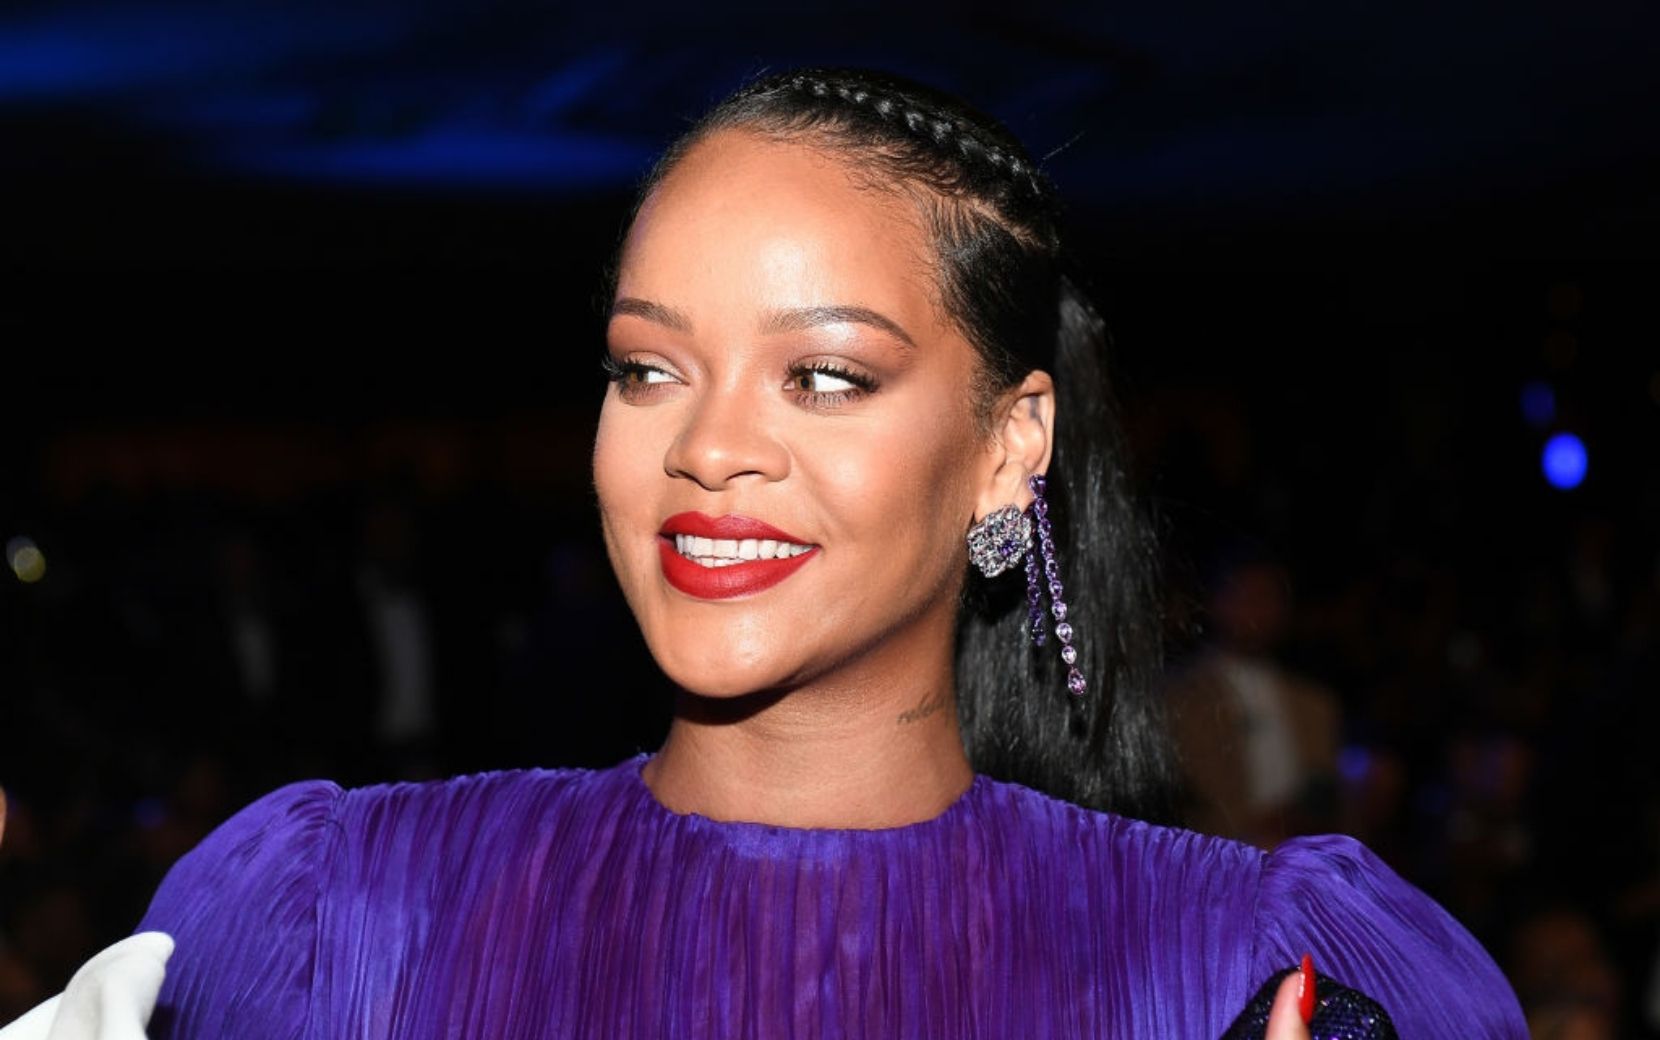 Rihanna fala sobre carreira como cantora: "Eu só quero me divertir com a música"